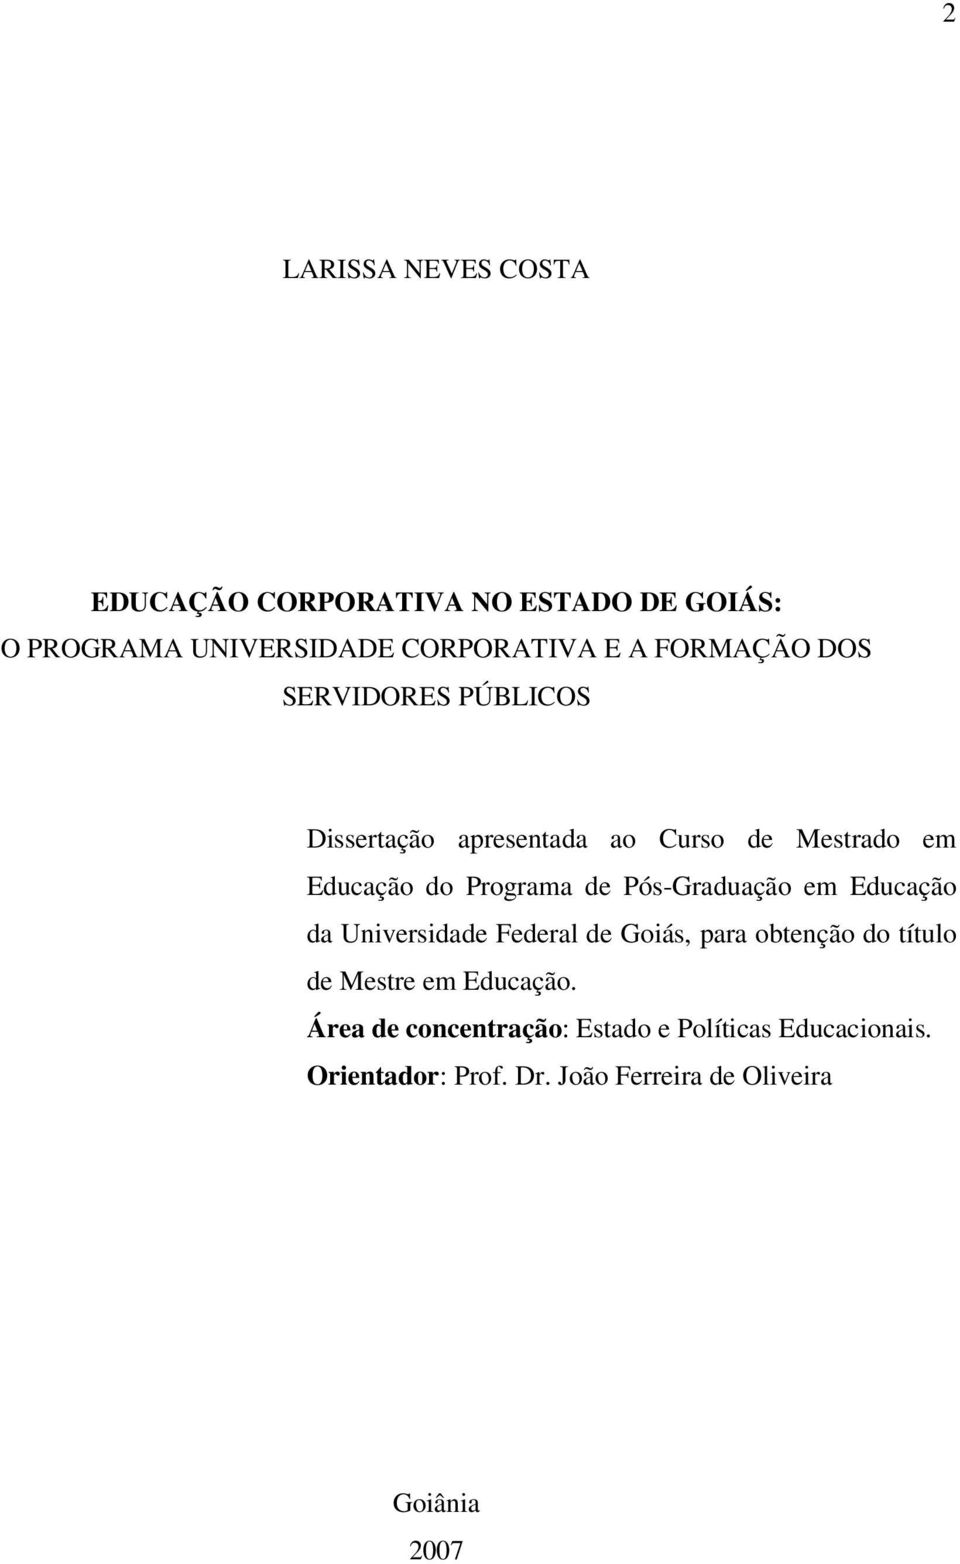 Pós-Graduação em Educação da Universidade Federal de Goiás, para obtenção do título de Mestre em Educação.